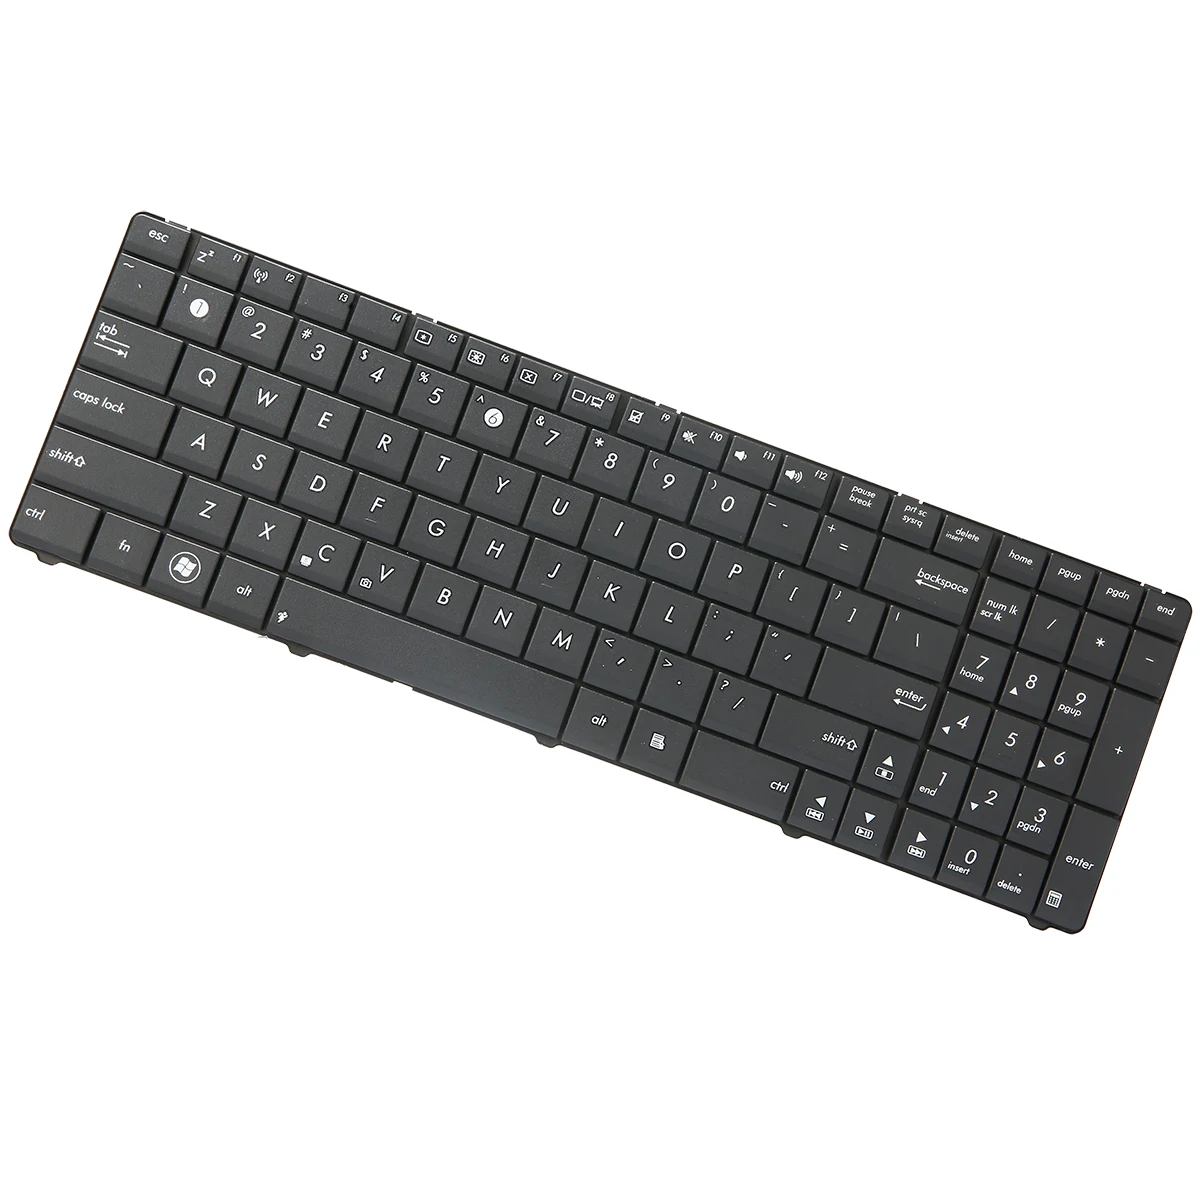 Ультра тонкая черная клавиатура для ноутбука для ASUS серии K53 K53E K53S K53U K53Z K53BY K73 K73B K73E K73S США Клавиатура ноутбука